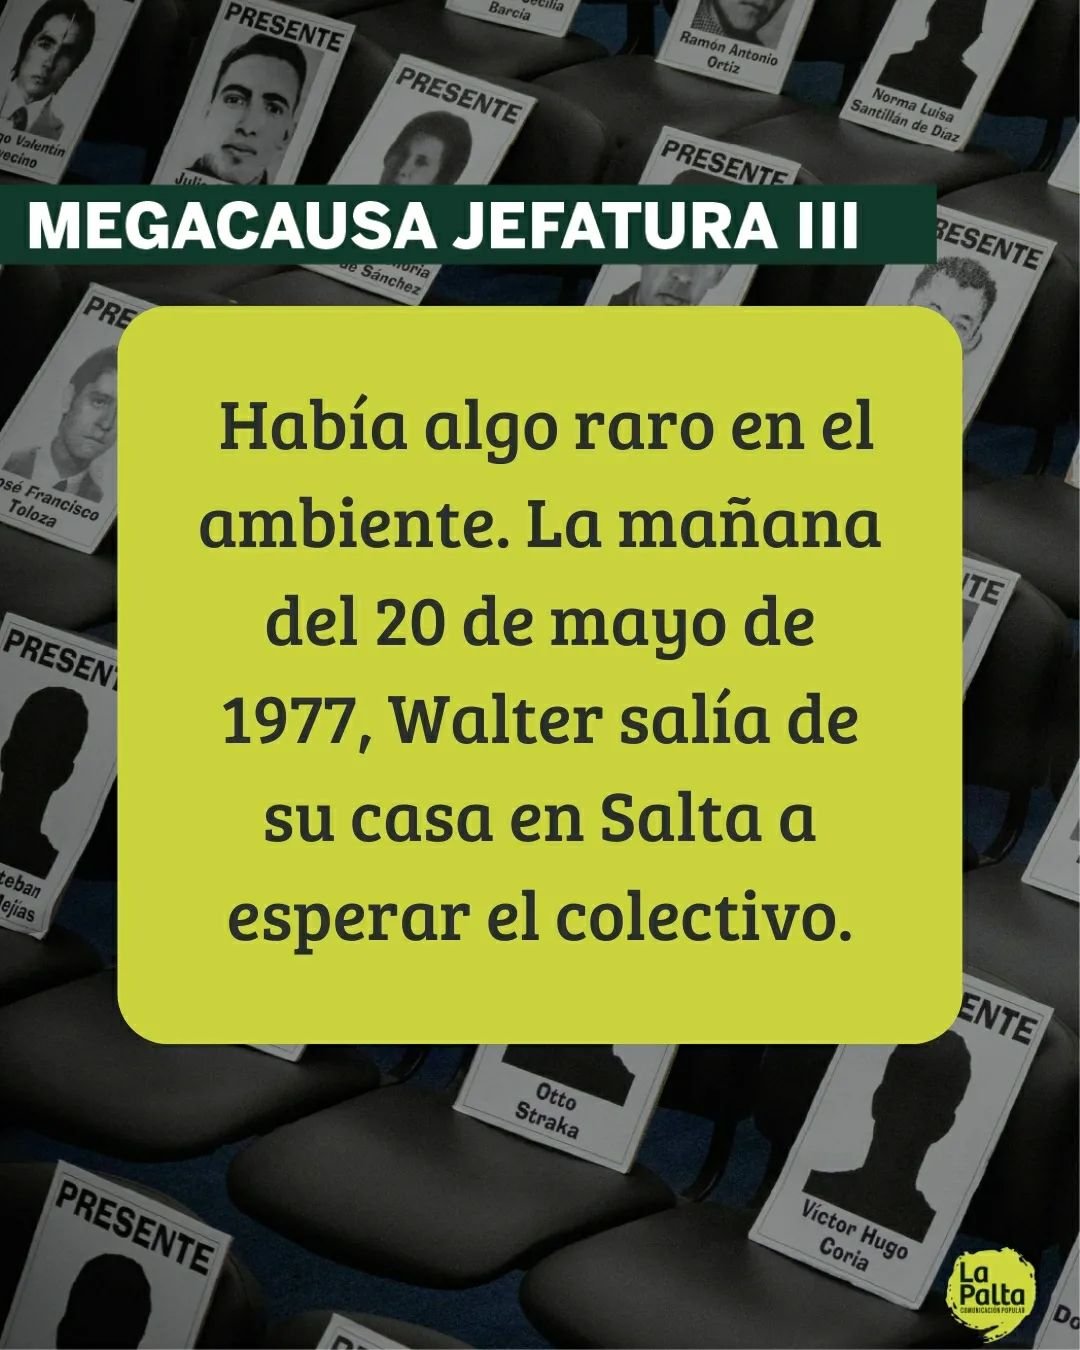 ◽ El 20 de mayo de 1977, Walter Montesino fue secuestrado en Salta por hombres armados junto a su hermano Hugo. Ambos estuvieron detenidos primero en la Polic&iacute;a Federal en Salta y luego en la Jefatura de Polic&iacute;a en Tucum&aacute;n. Tras 